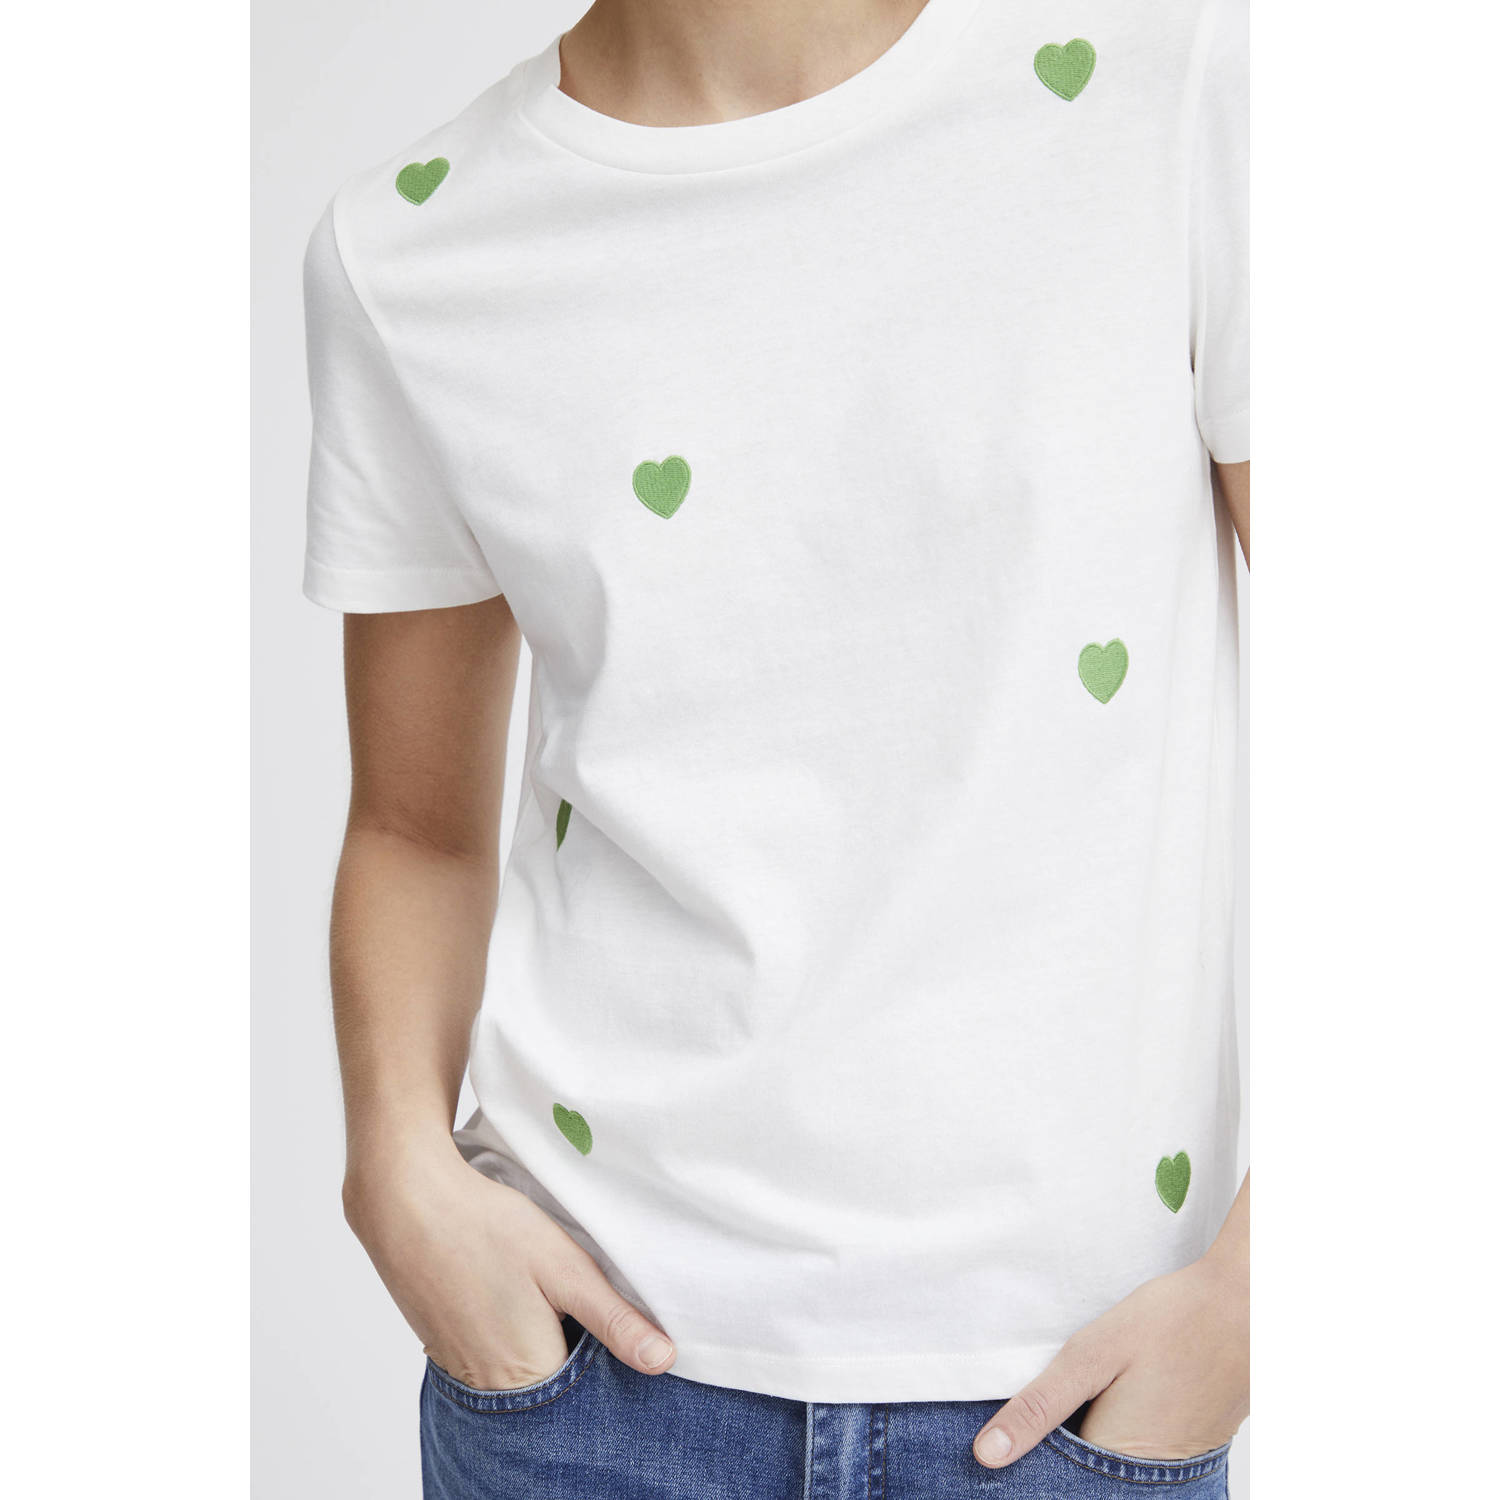 ICHI T-shirt IHCAMINO met hartjes wit groen